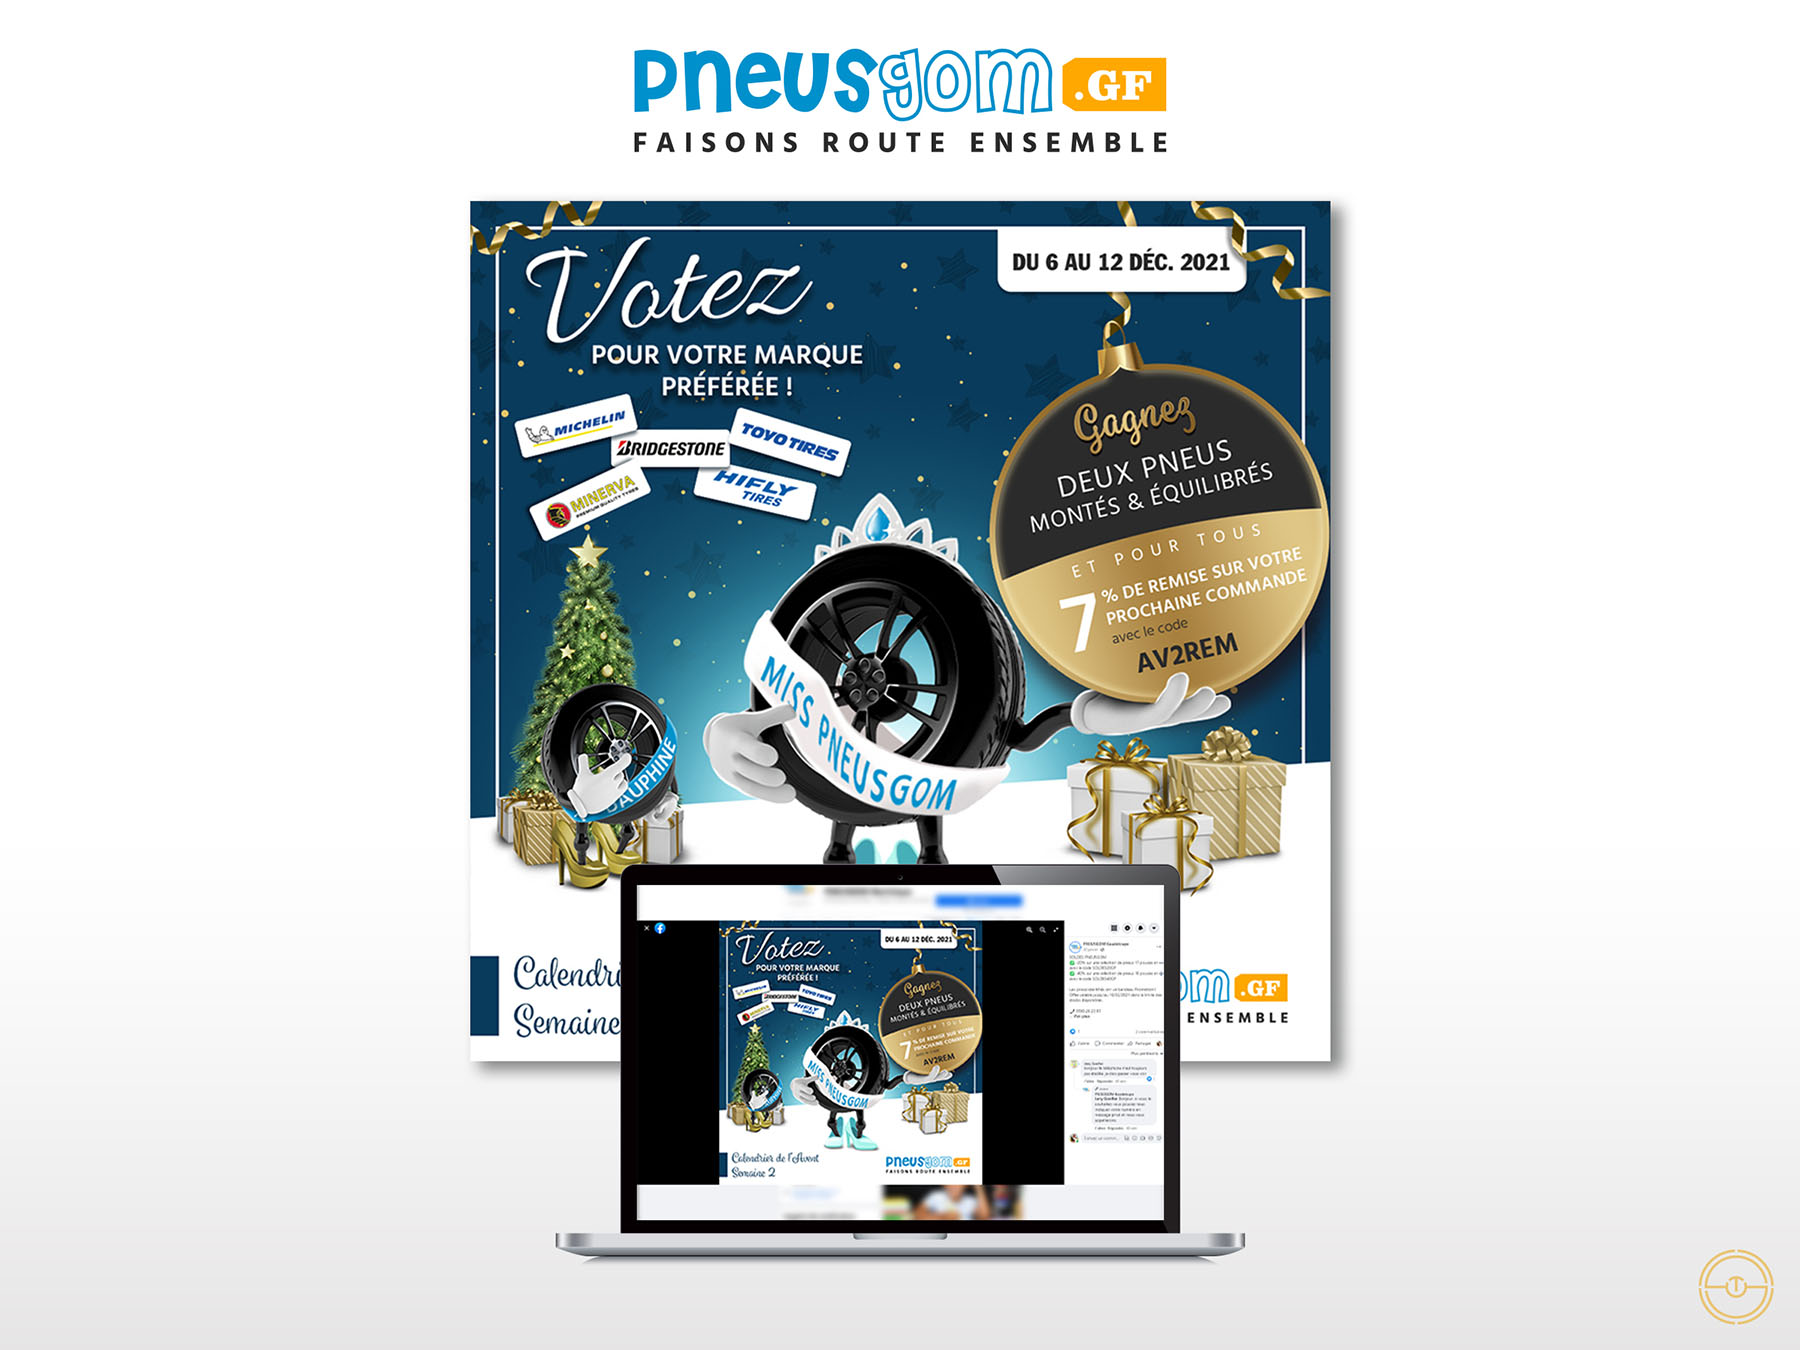 Création d'un digital marketing de Noël pour la marque Pneusgom, spécialiste du pneu en Guyane Française